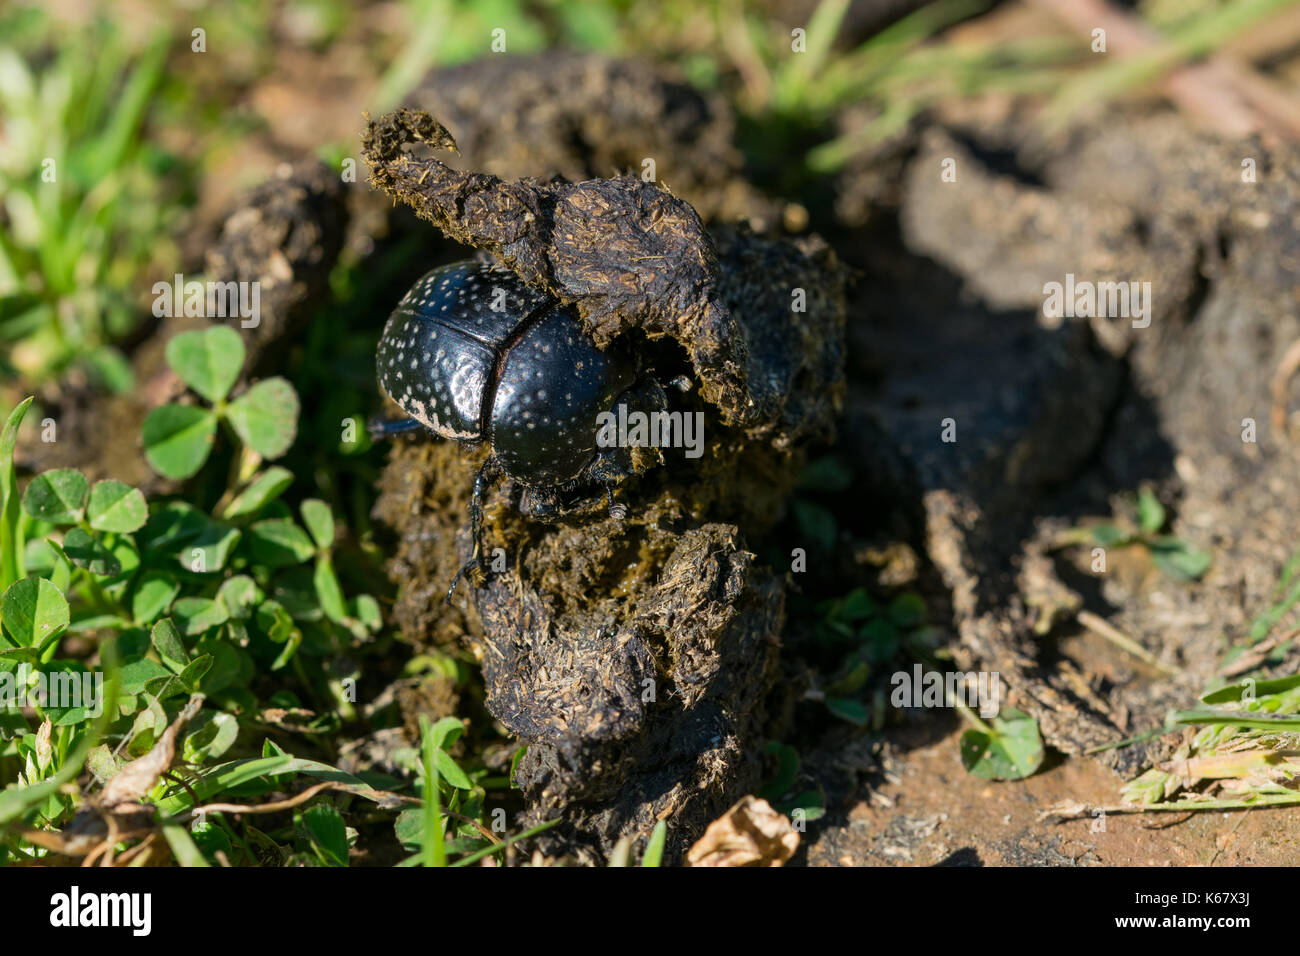 Un bousier noir, scarabée, Scarabaeus (Ateuchetus) variolosus, trouvé la manipulation d'un gros boule d'excréments dans un champ. Campagne maltaise, Malte Banque D'Images